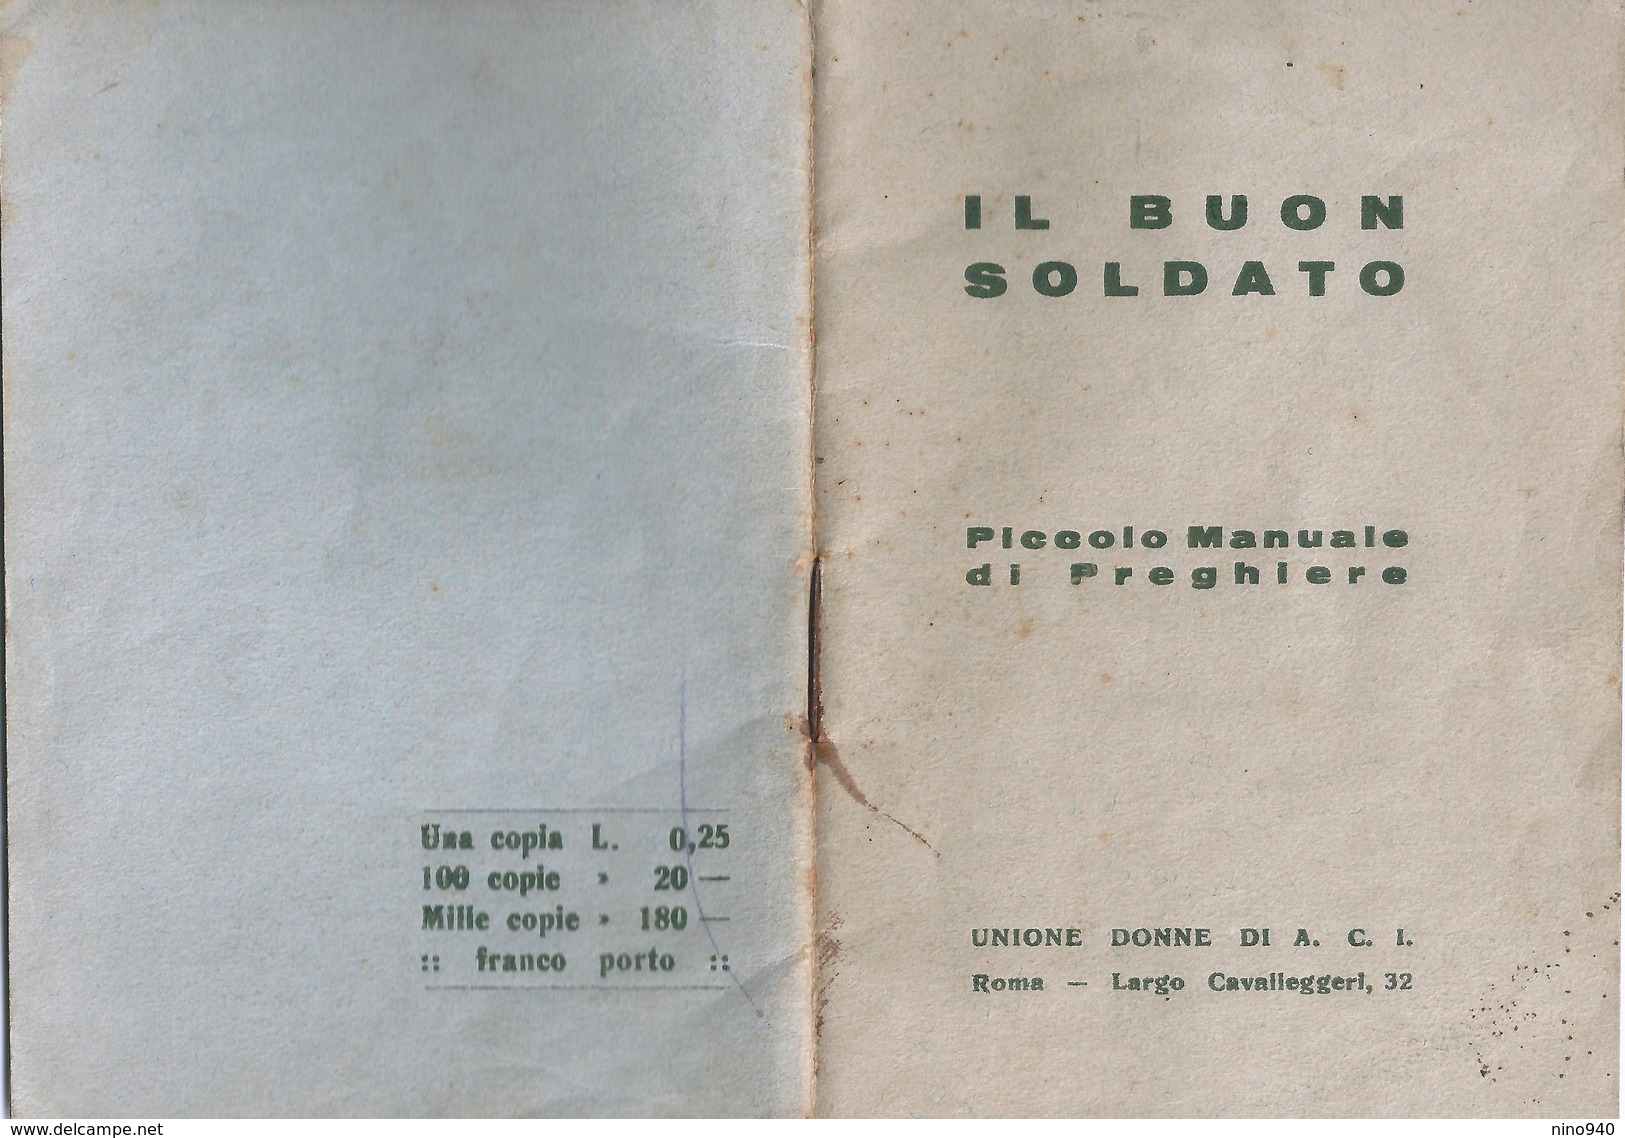 MILITARE - IL BUON SOLDATO  - LIBRETTO DI PREGHIERE - PAGINE 46 - Mm.83 X 119 - UNIONE DONNE DI A.C.I. - ROMA - Religión & Esoterismo